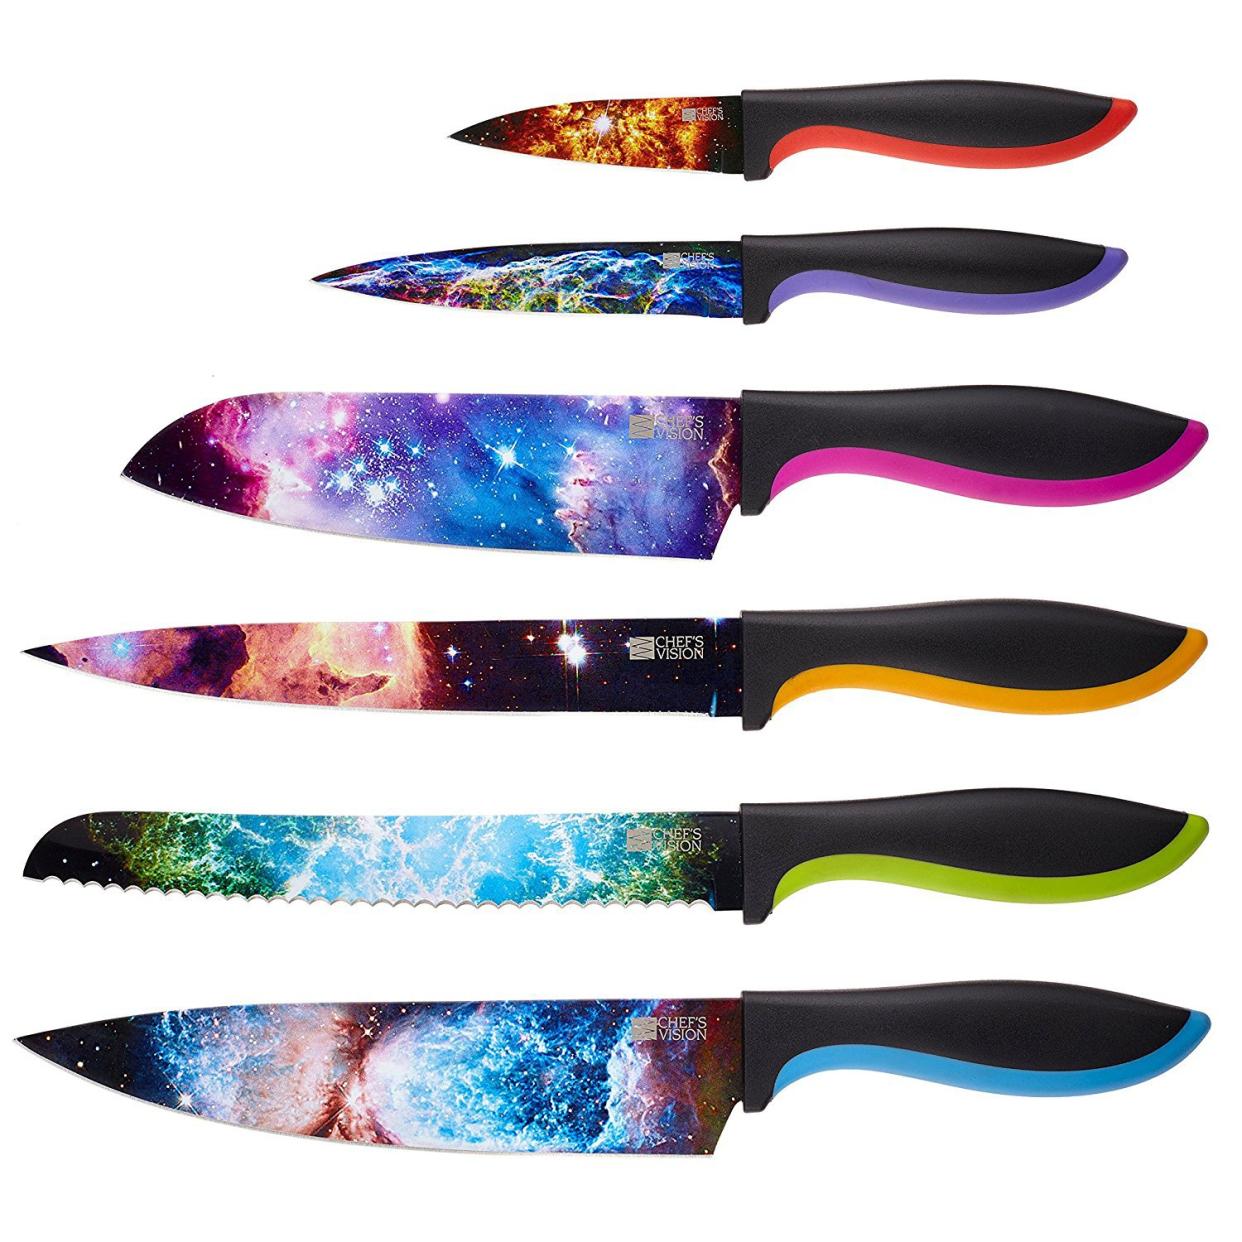 Chef's Vision Knife Set